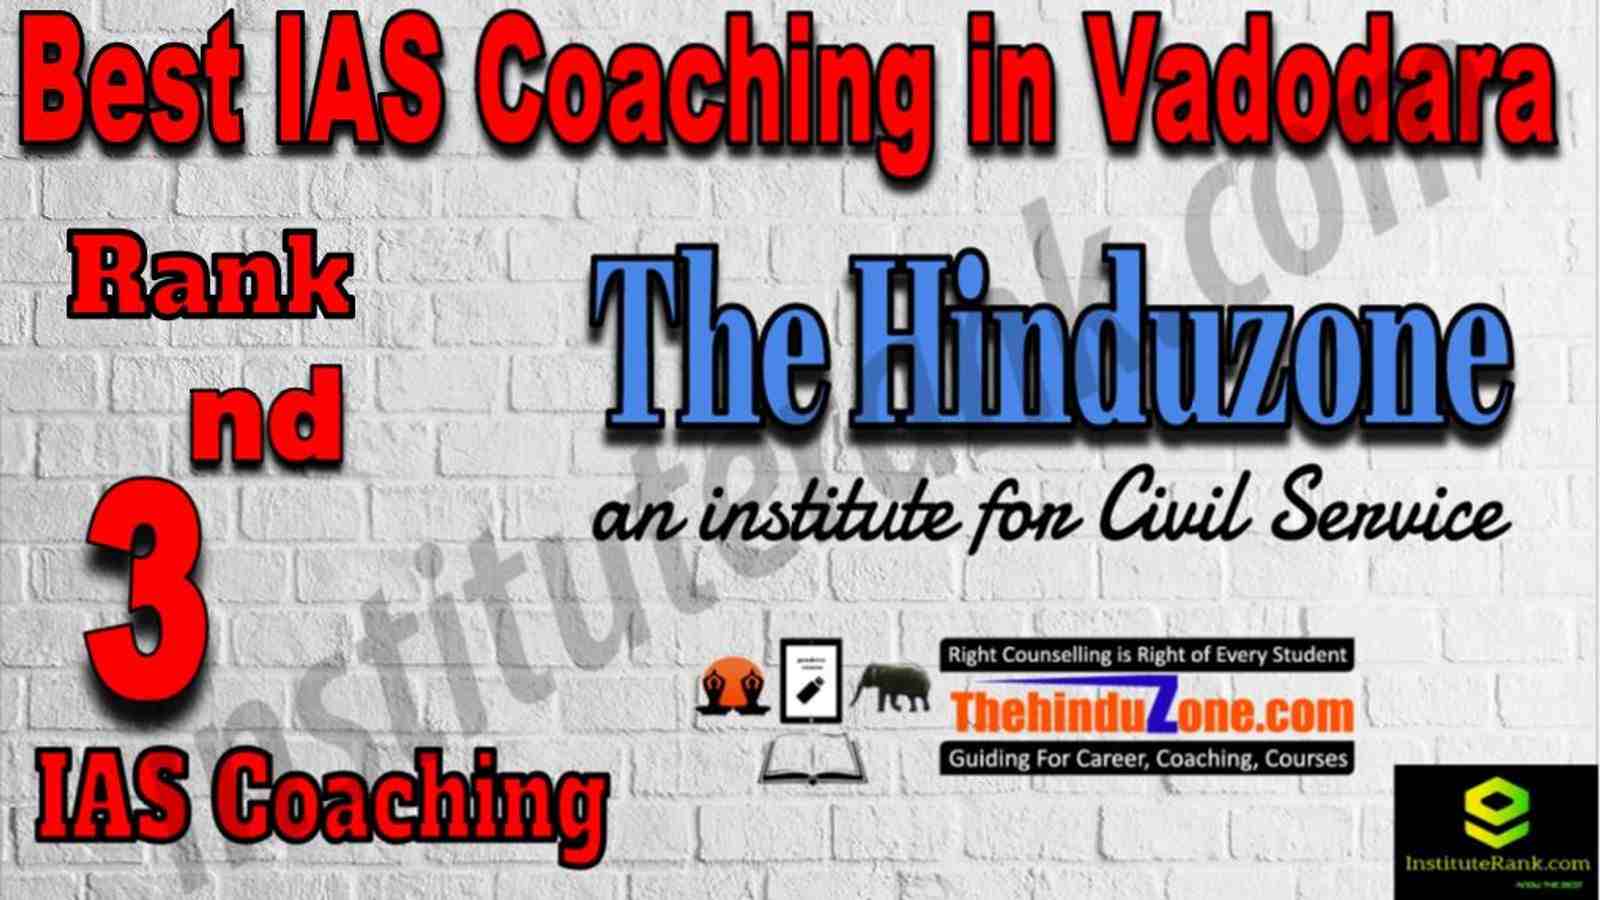 3rd Best IAS Coaching in Vadodara